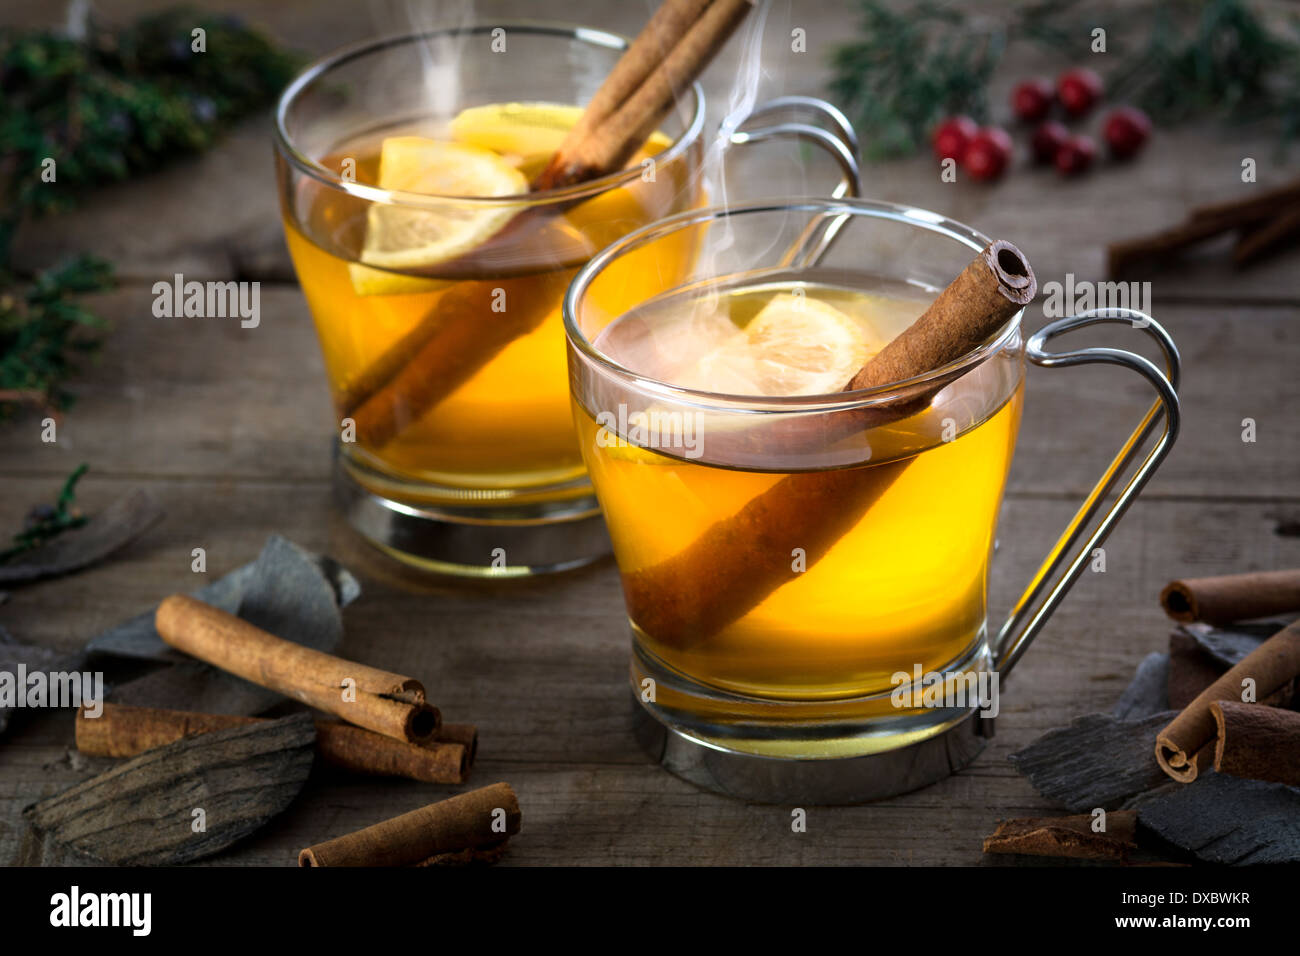 Deux whisky, rhum, cognac ou apple toddy cocktails avec cannelle situé sur bois rustique Banque D'Images